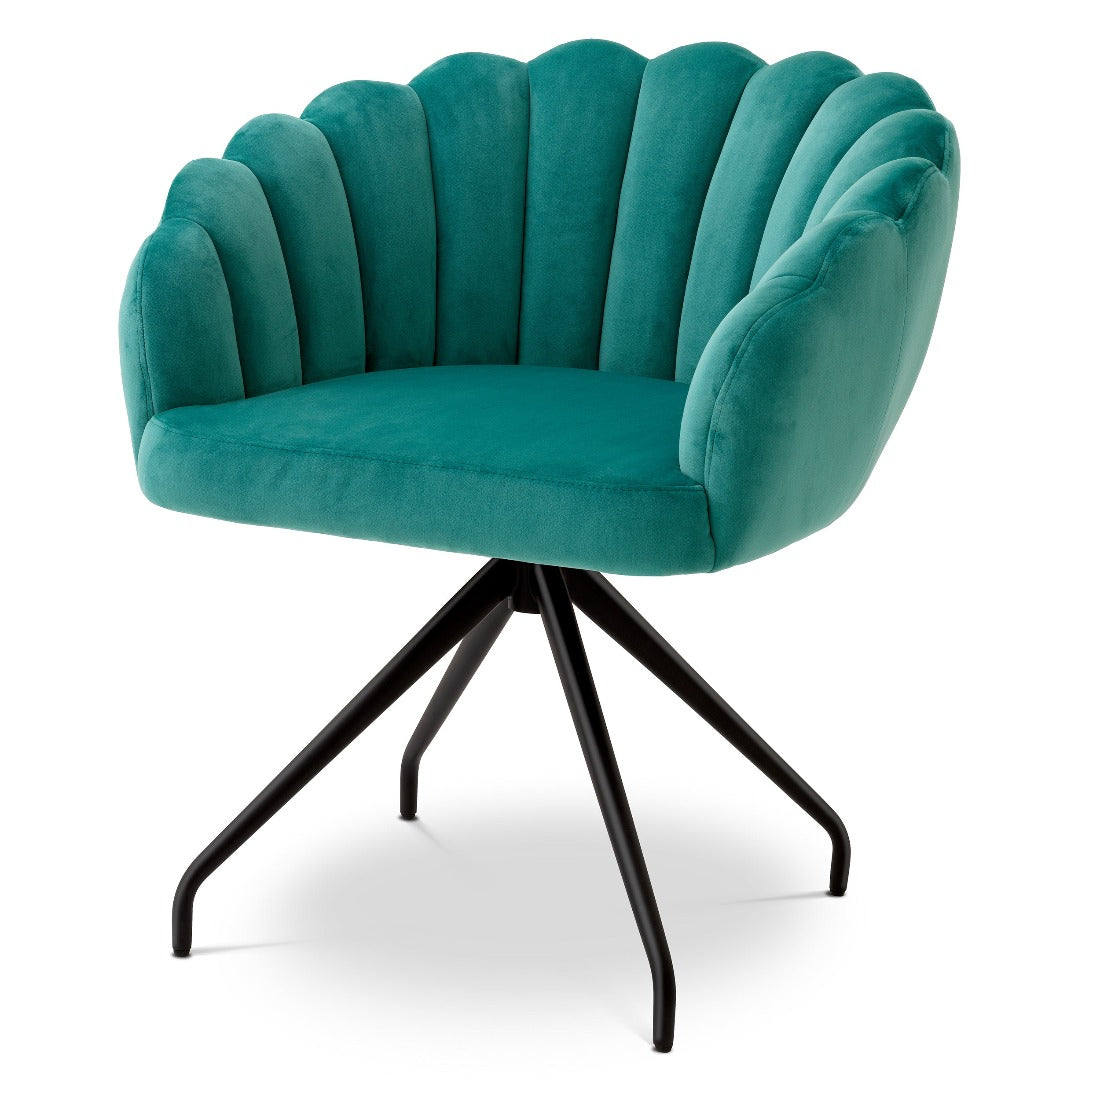 Dining chair Eichholtz Luzern turquoise